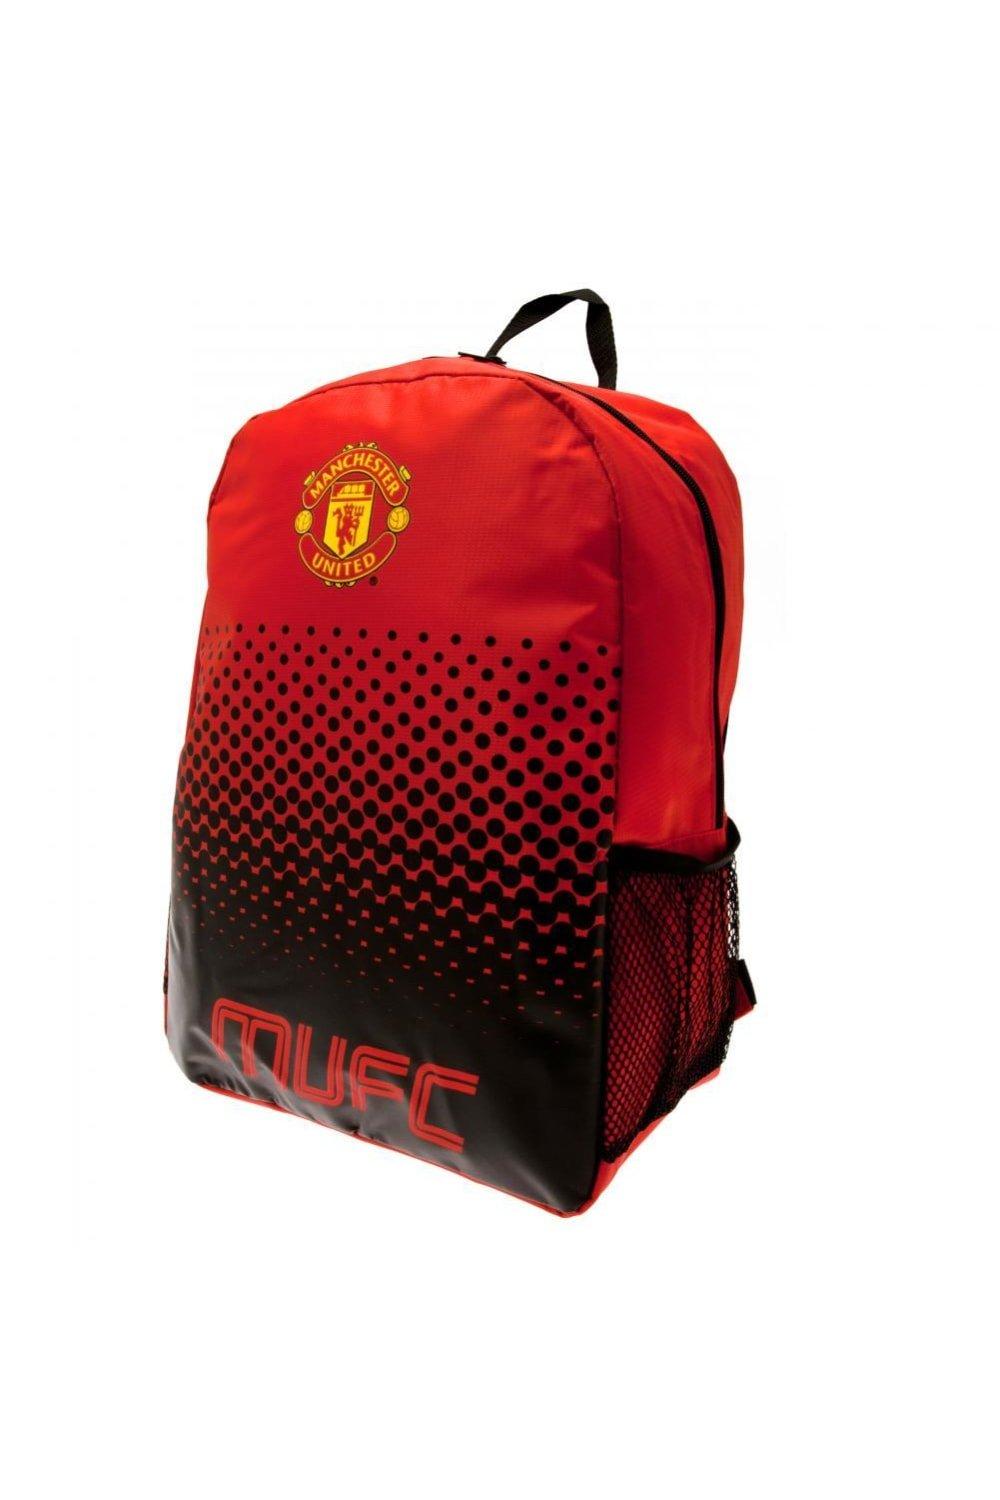 Рюкзак с дизайном Fade Manchester United FC, красный